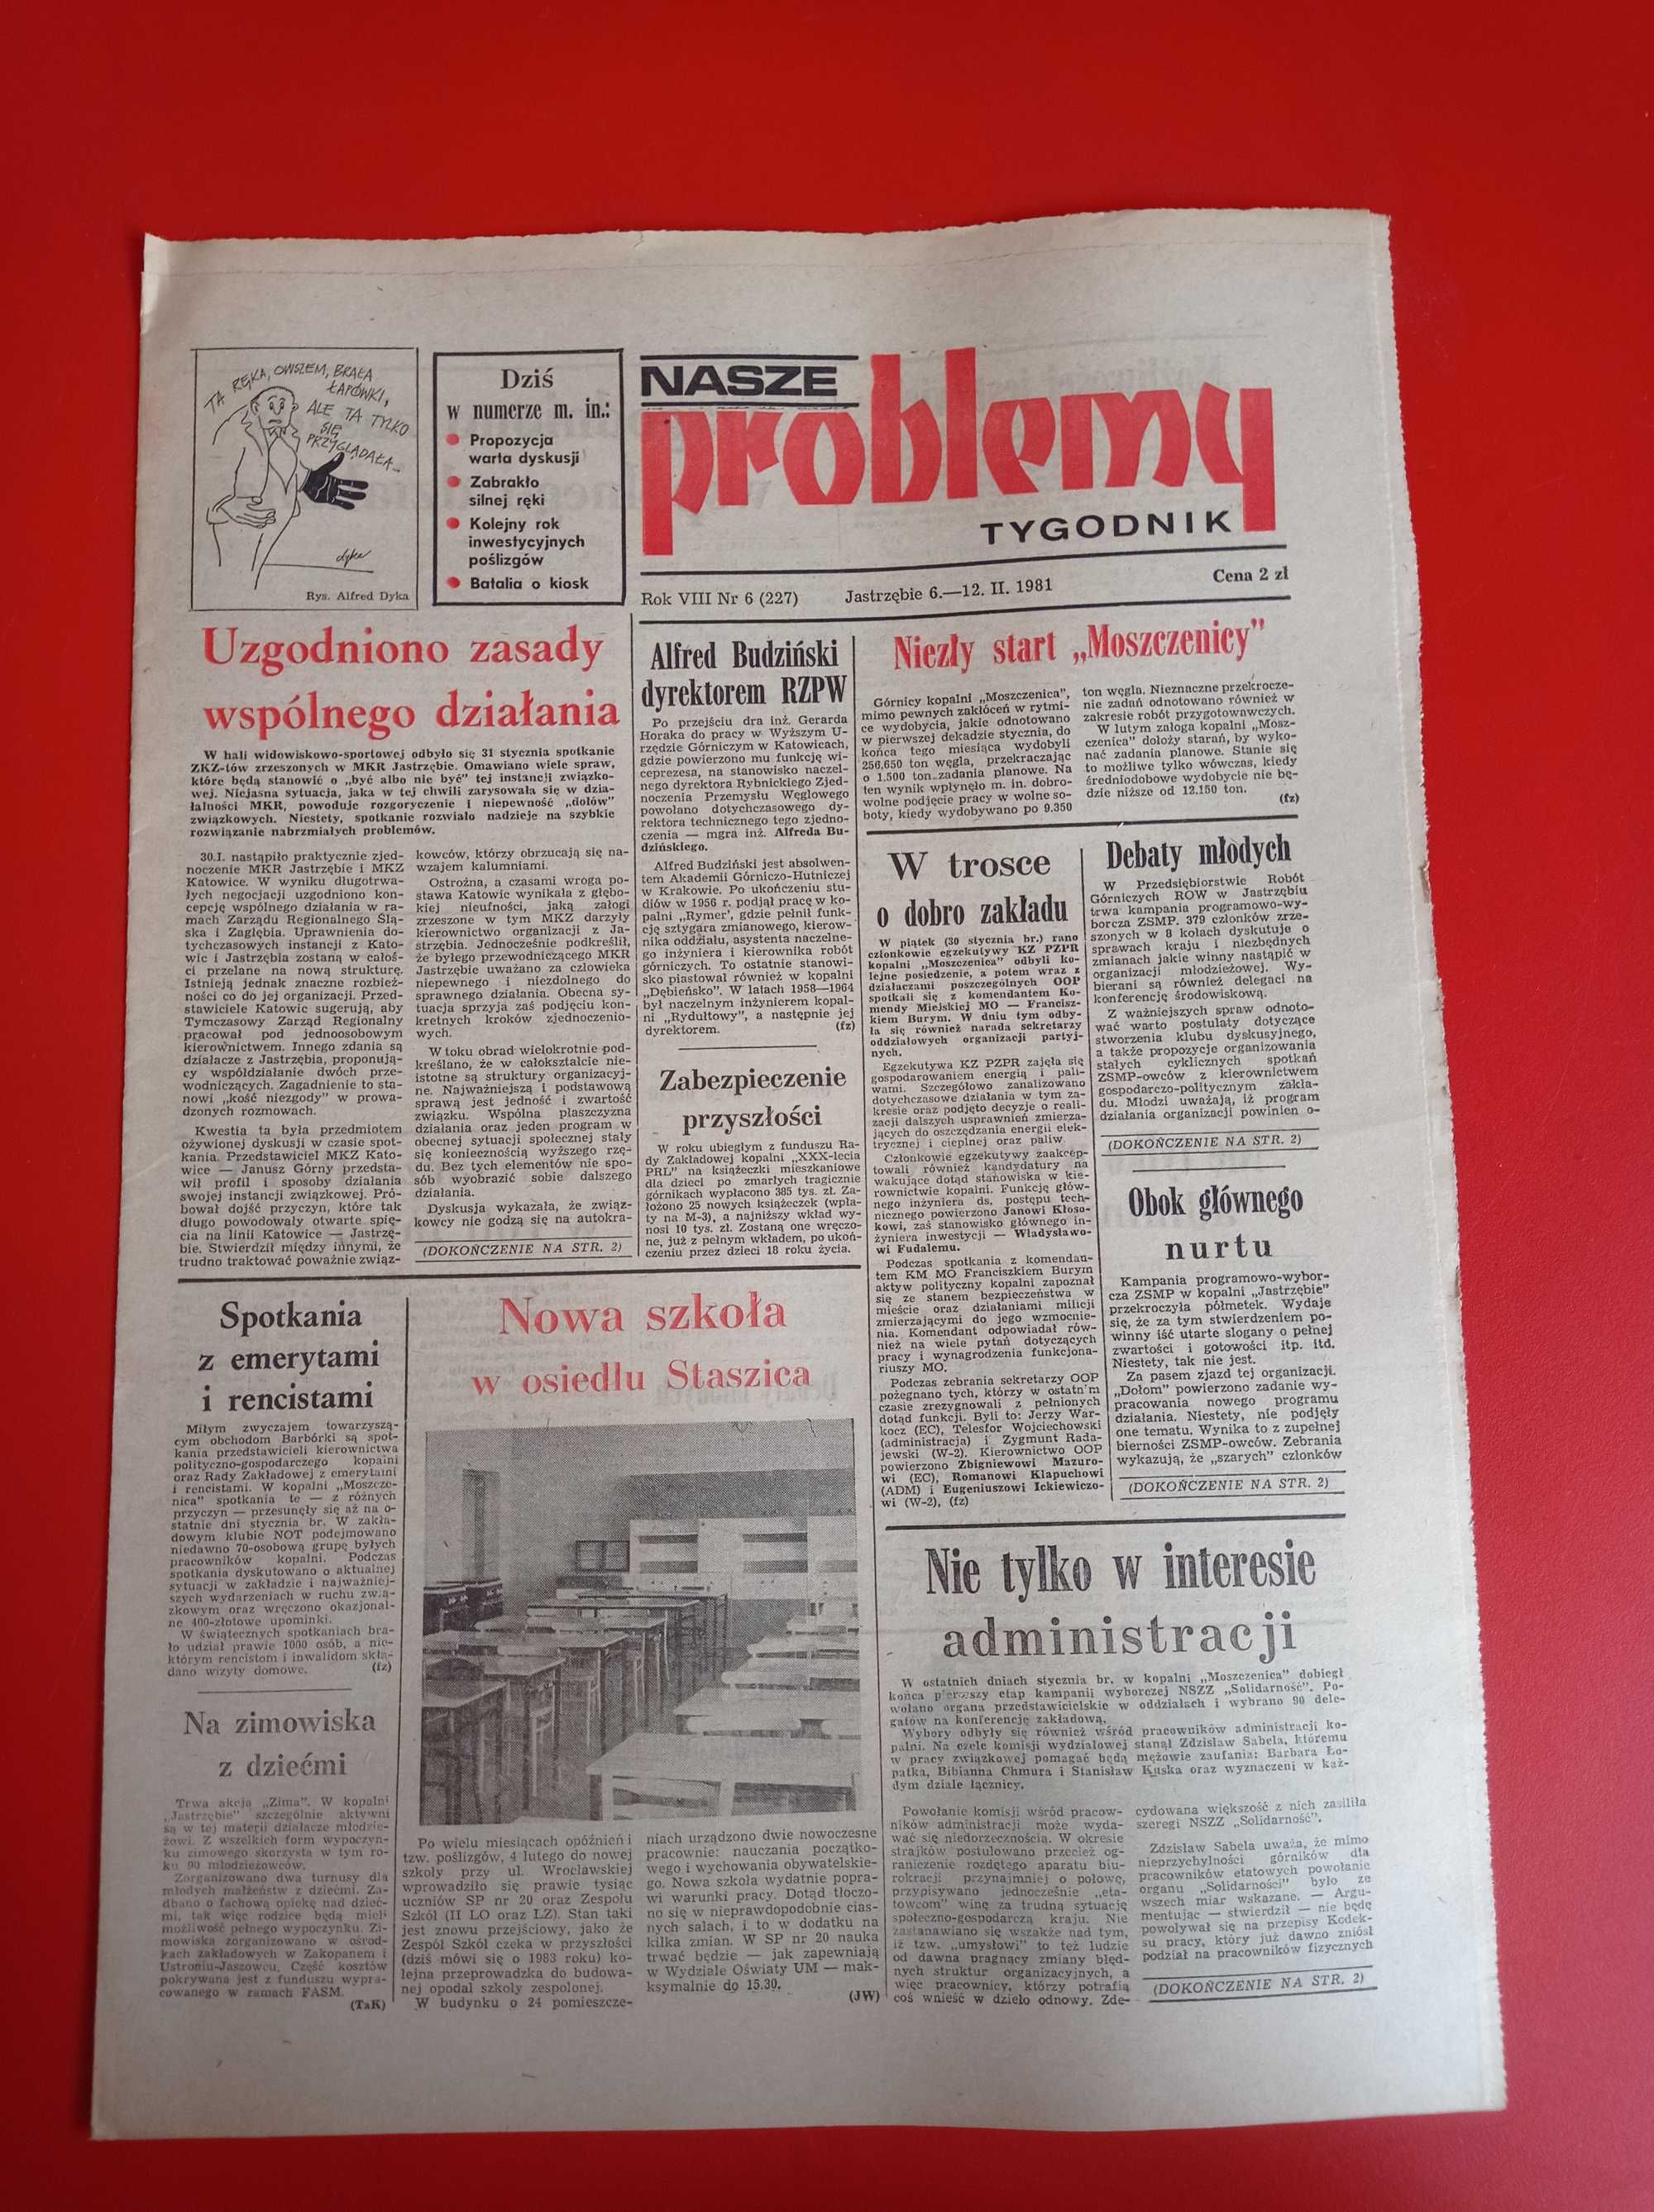 Nasze problemy, Jastrzębie, nr 6, 6-12 lutego 1981